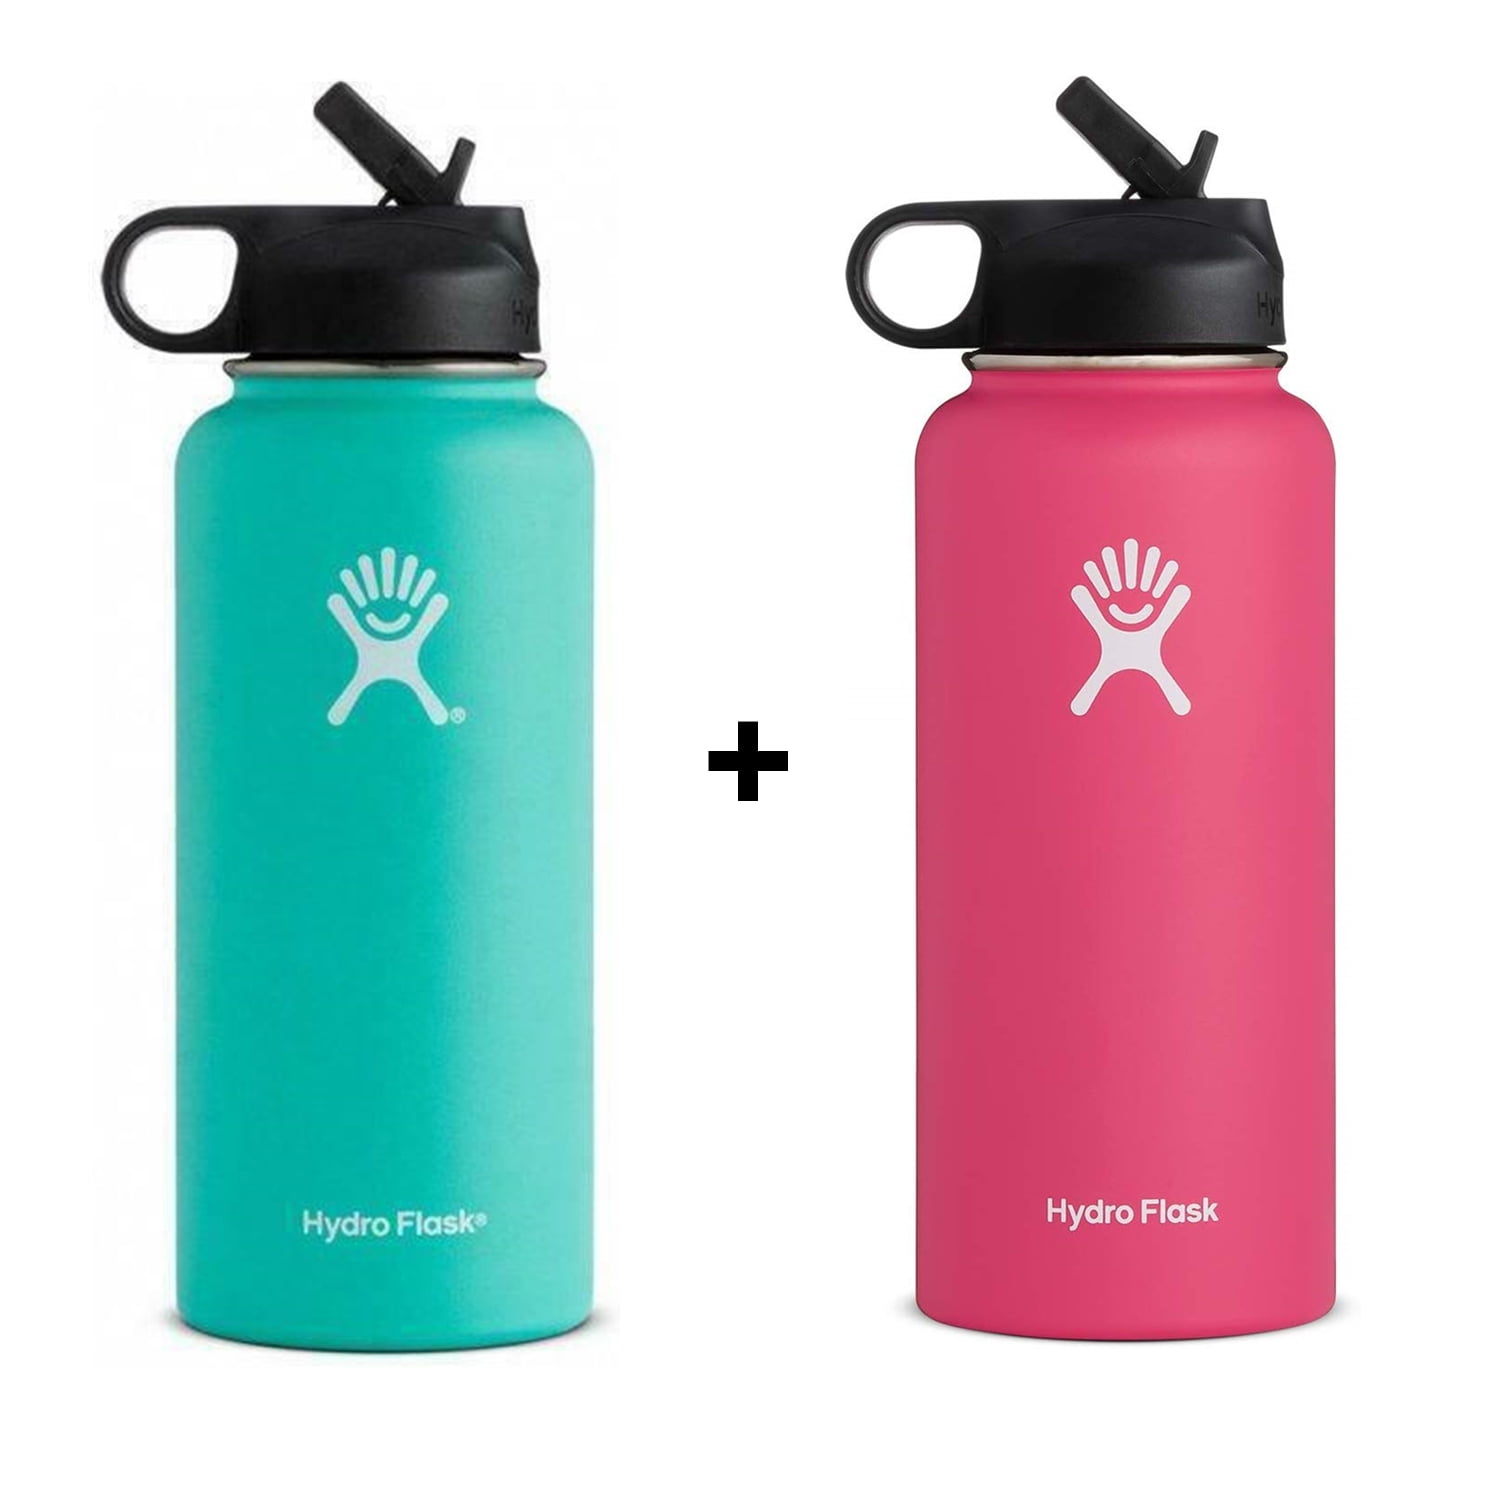 hydro flask water bottle pink